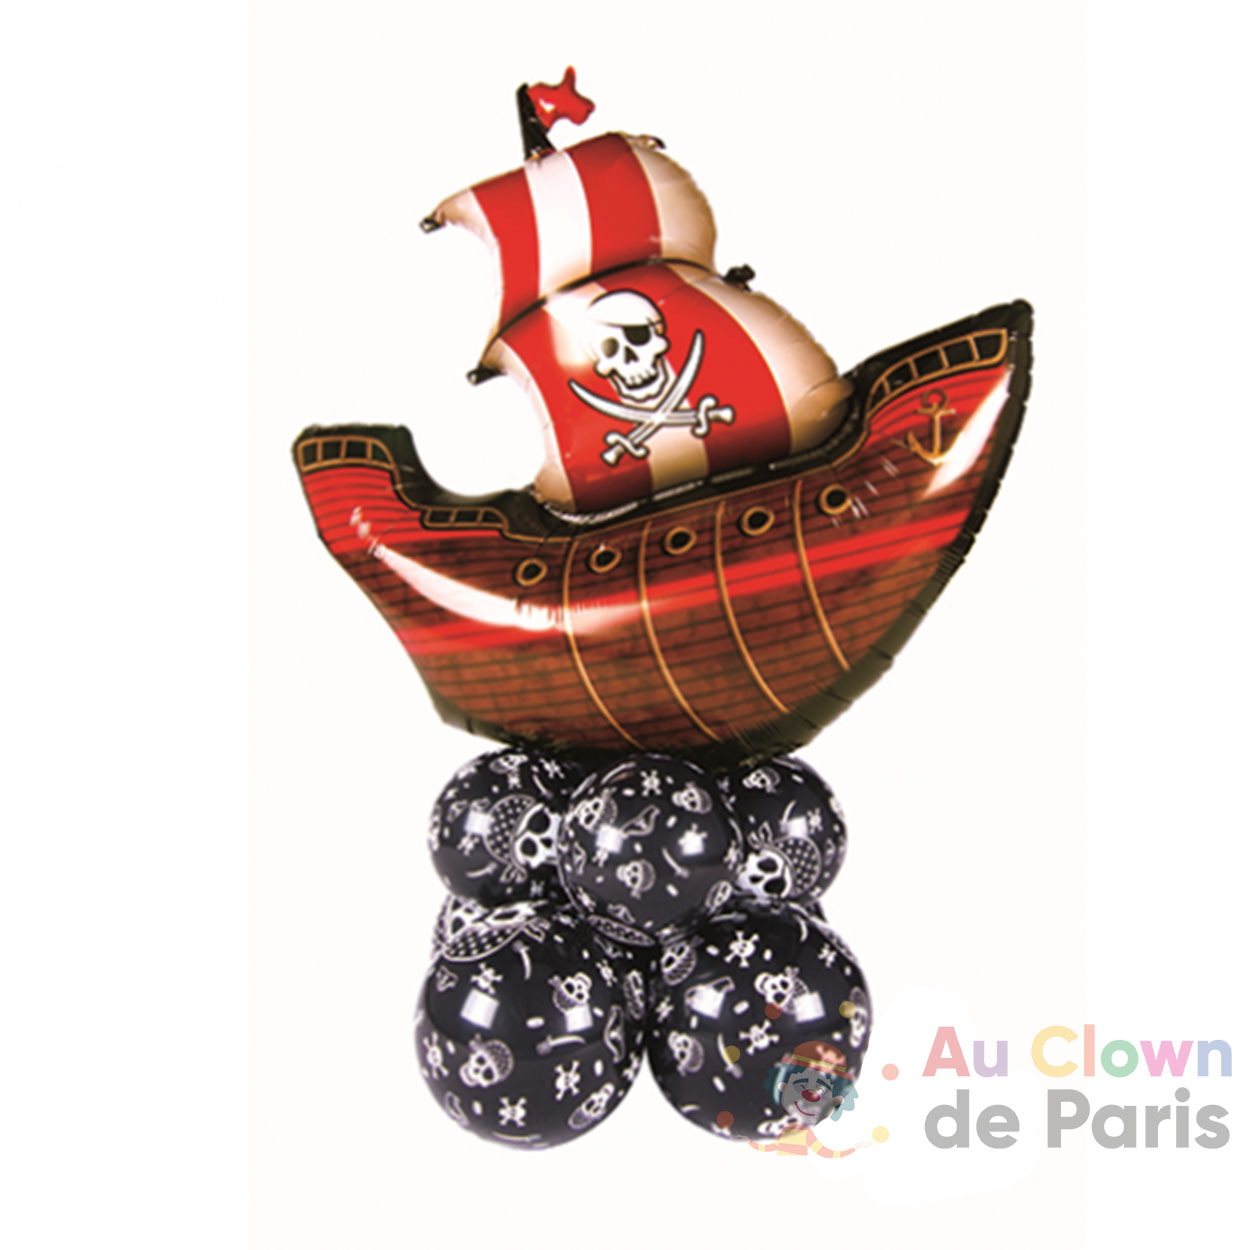 Bouquet de ballons Gâteau d'anniversaire 60ans - Au Clown de Paris